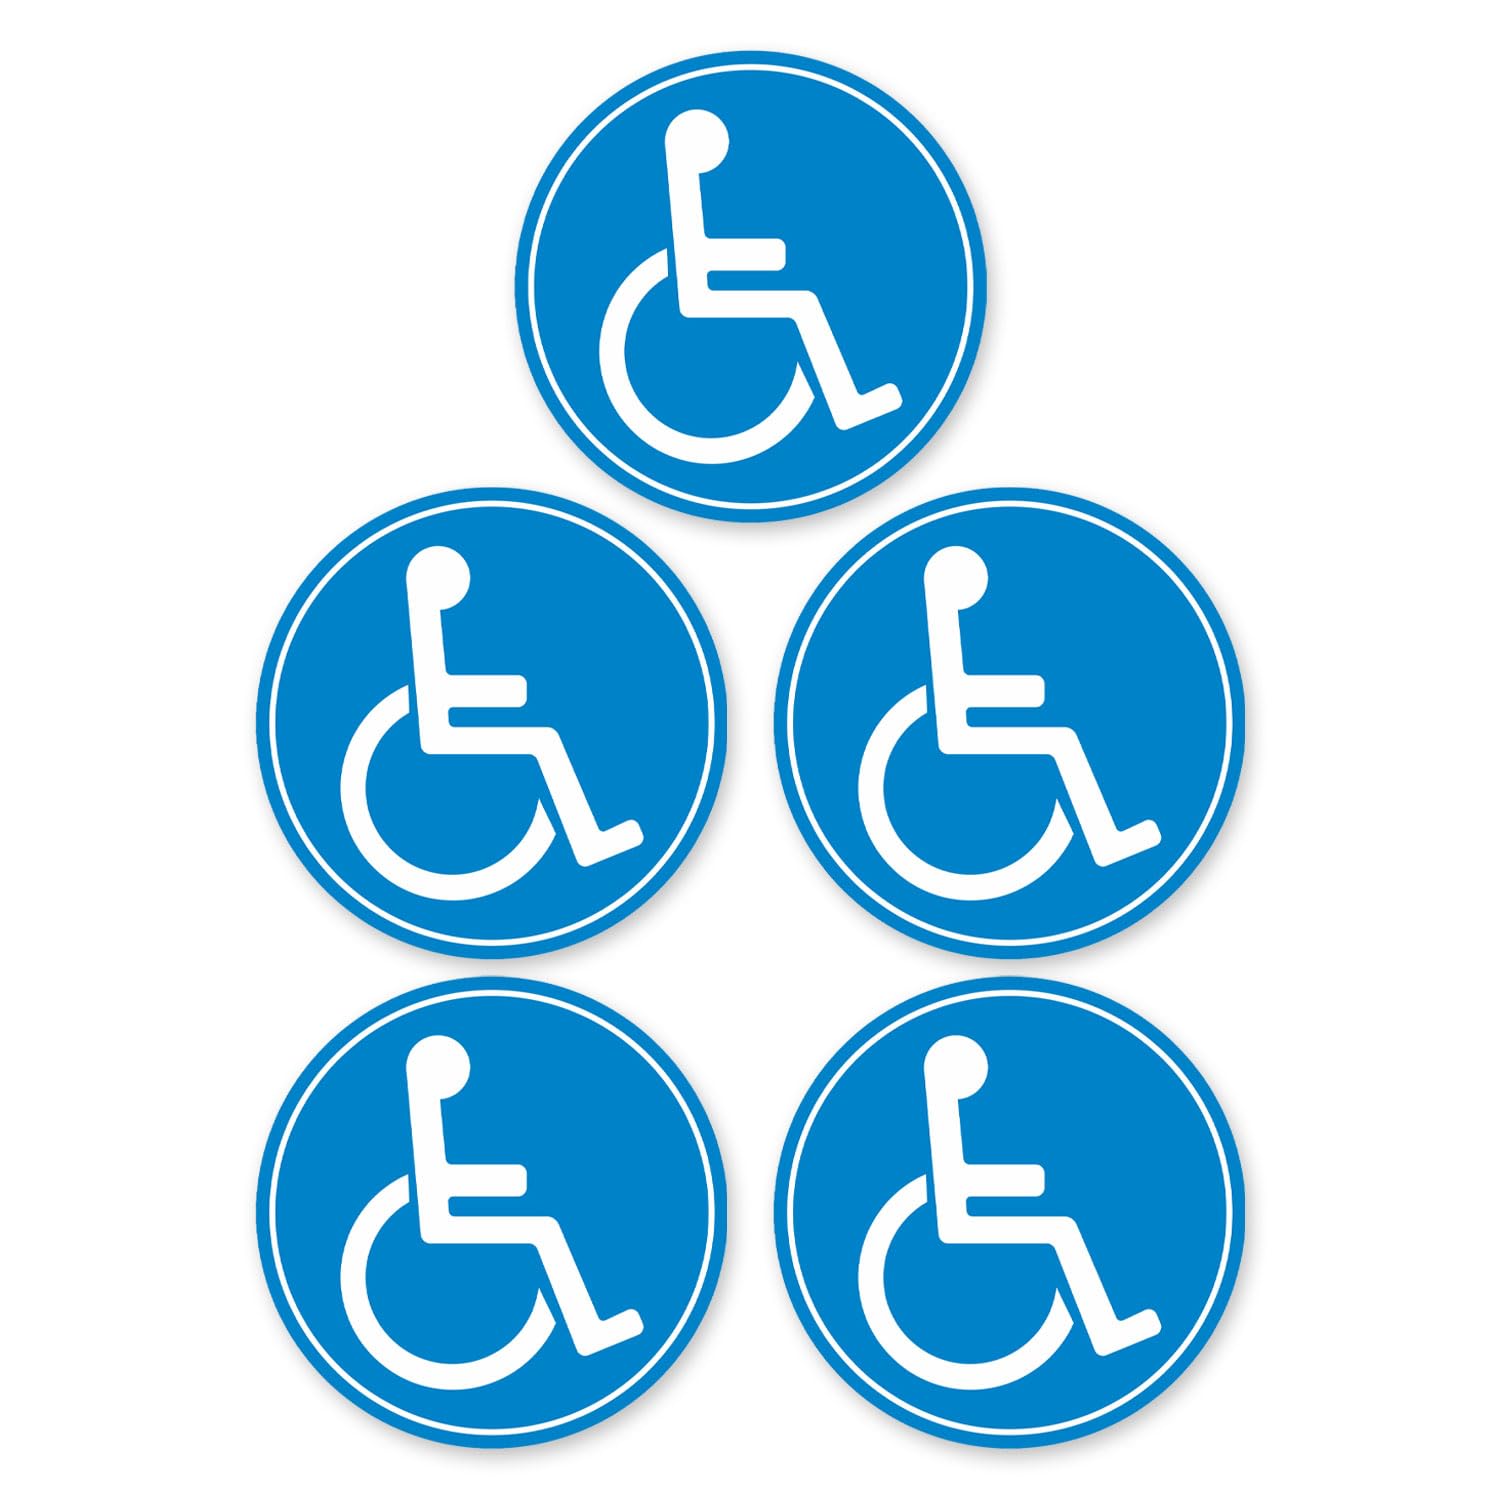 iSecur 5er Set Rollstuhl-Aufkleber I kfz_397 I Ø 10 cm I Behinderten-Aufkleber für Auto, Behinderten-Transport, Rollstuhl-Fahrer I Wetterfest außen-klebend von iSecur